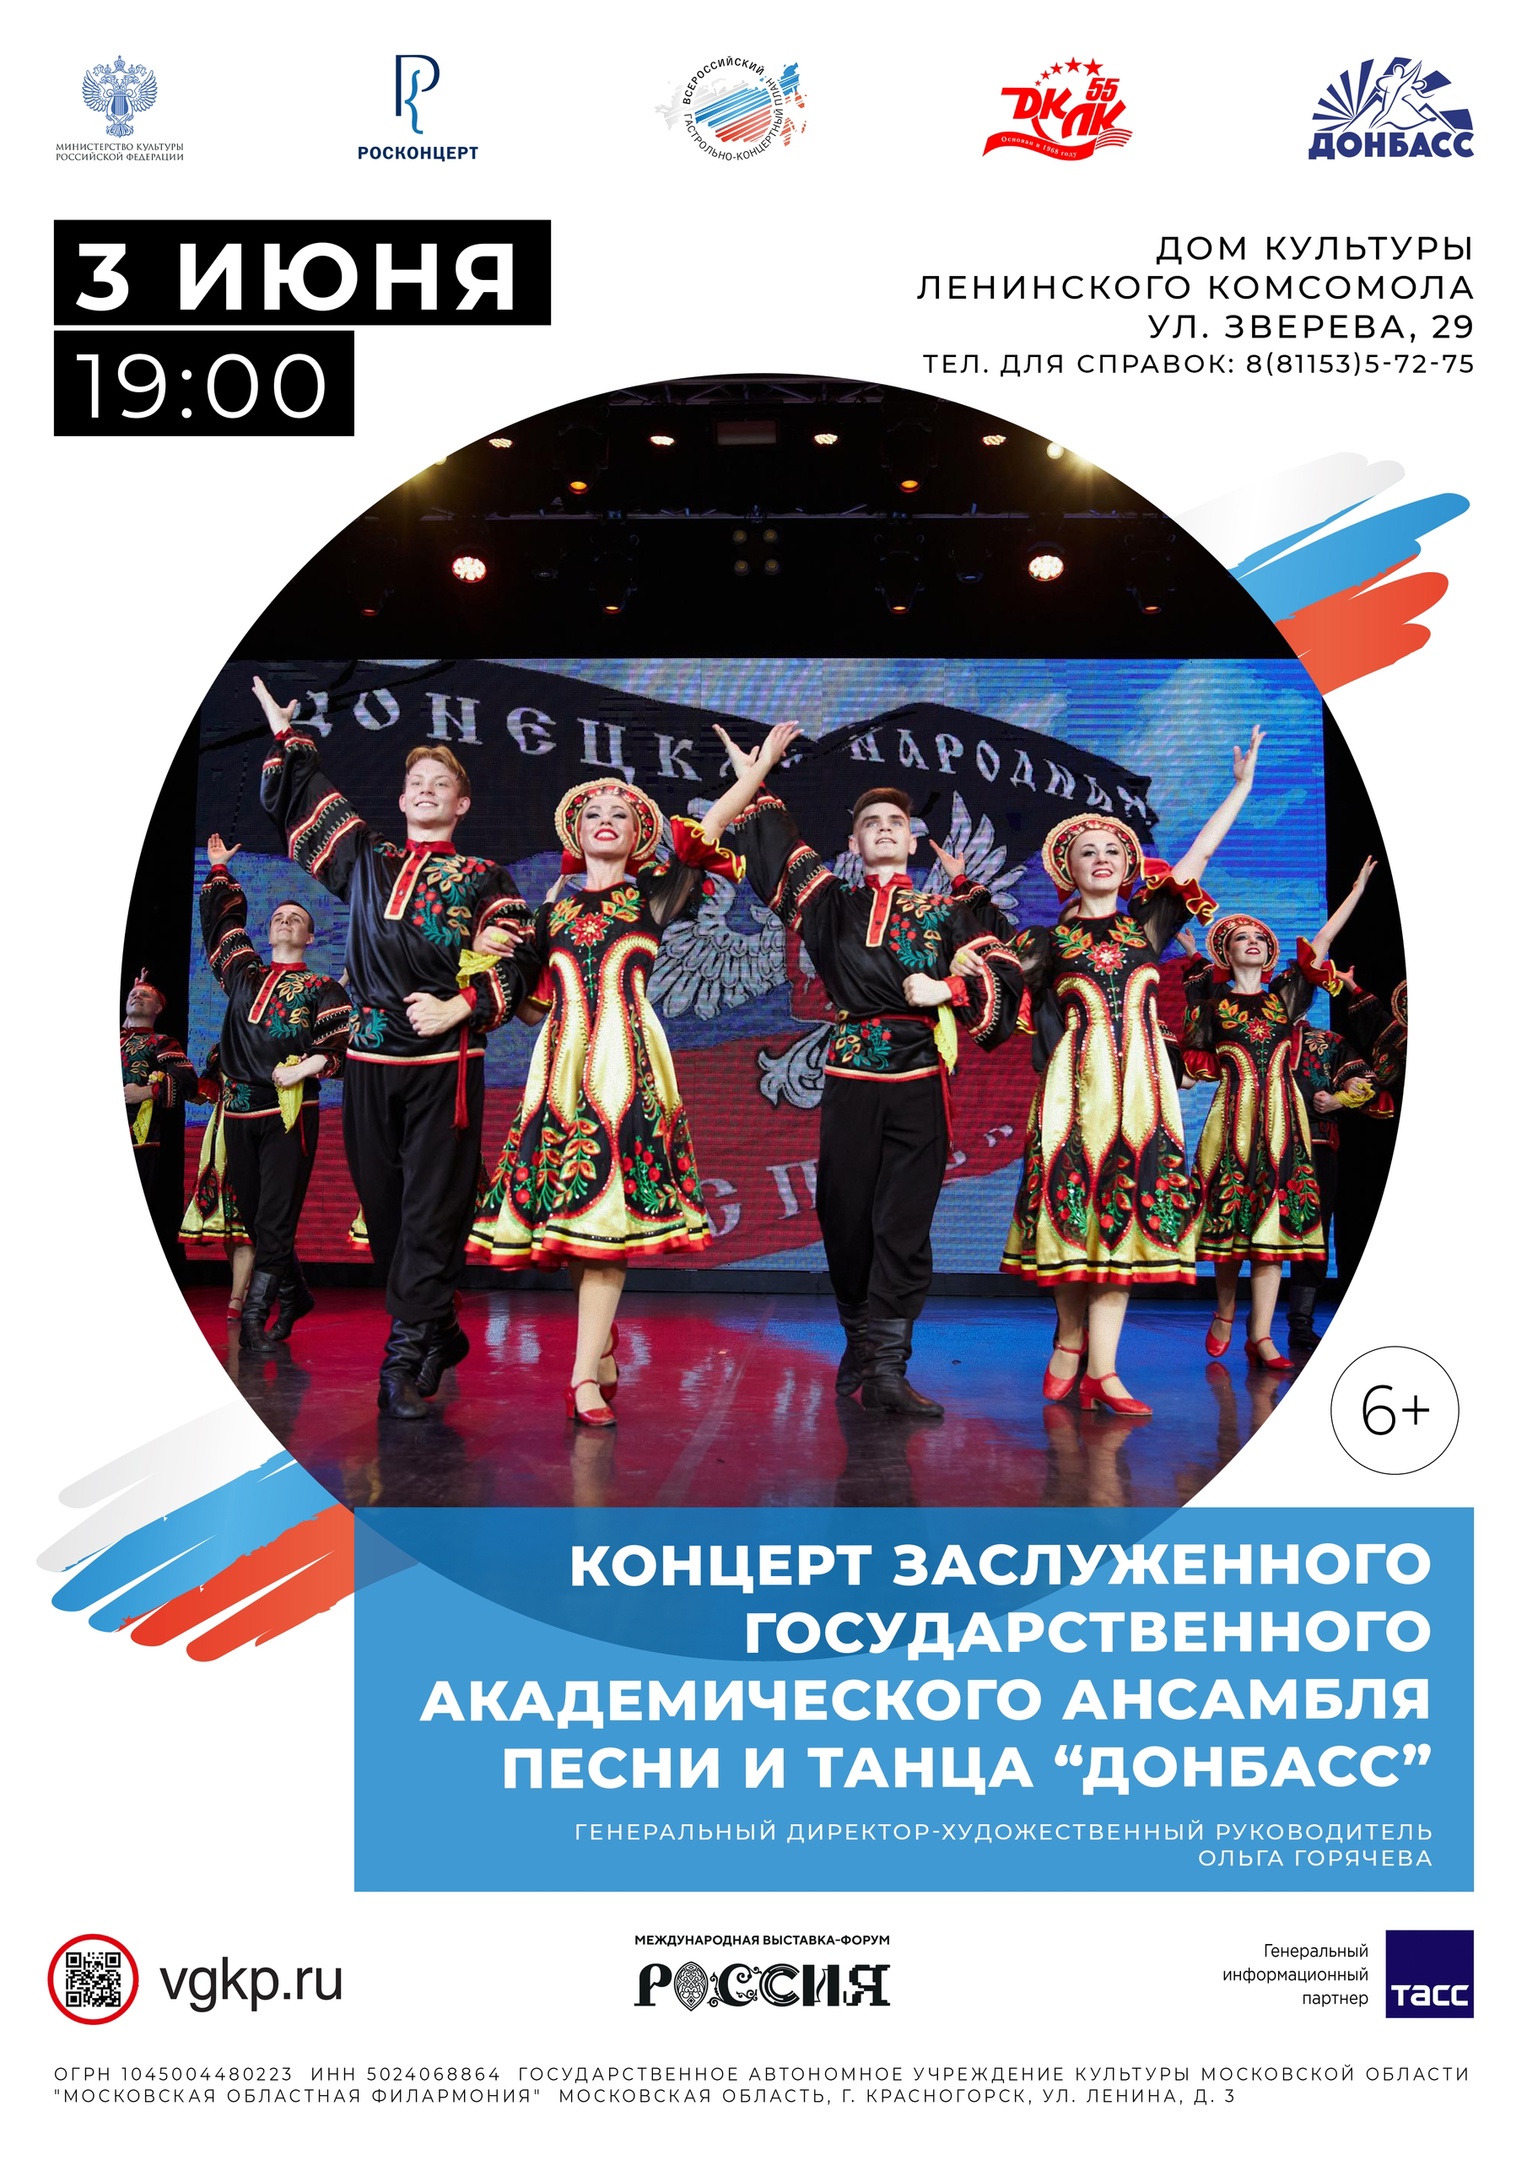 Концерт Заслуженного Государственного Академического ансамбля песни и танца "Донбасс"